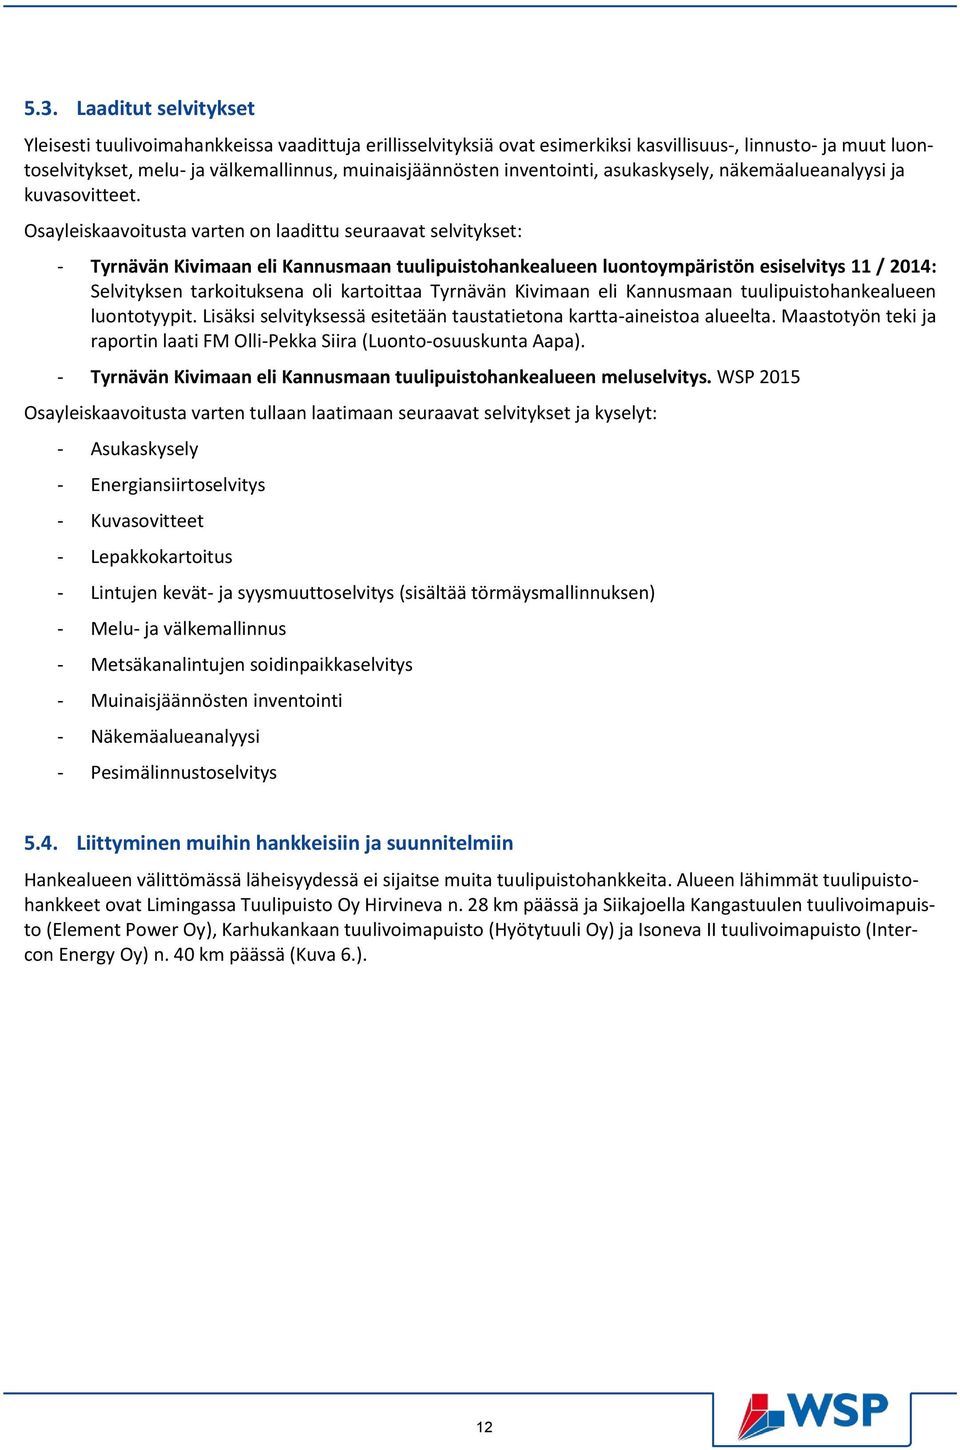 Osayleiskaavoitusta varten on laadittu seuraavat selvitykset: - Tyrnävän Kivimaan eli Kannusmaan tuulipuistohankealueen luontoympäristön esiselvitys 11 / 2014: Selvityksen tarkoituksena oli